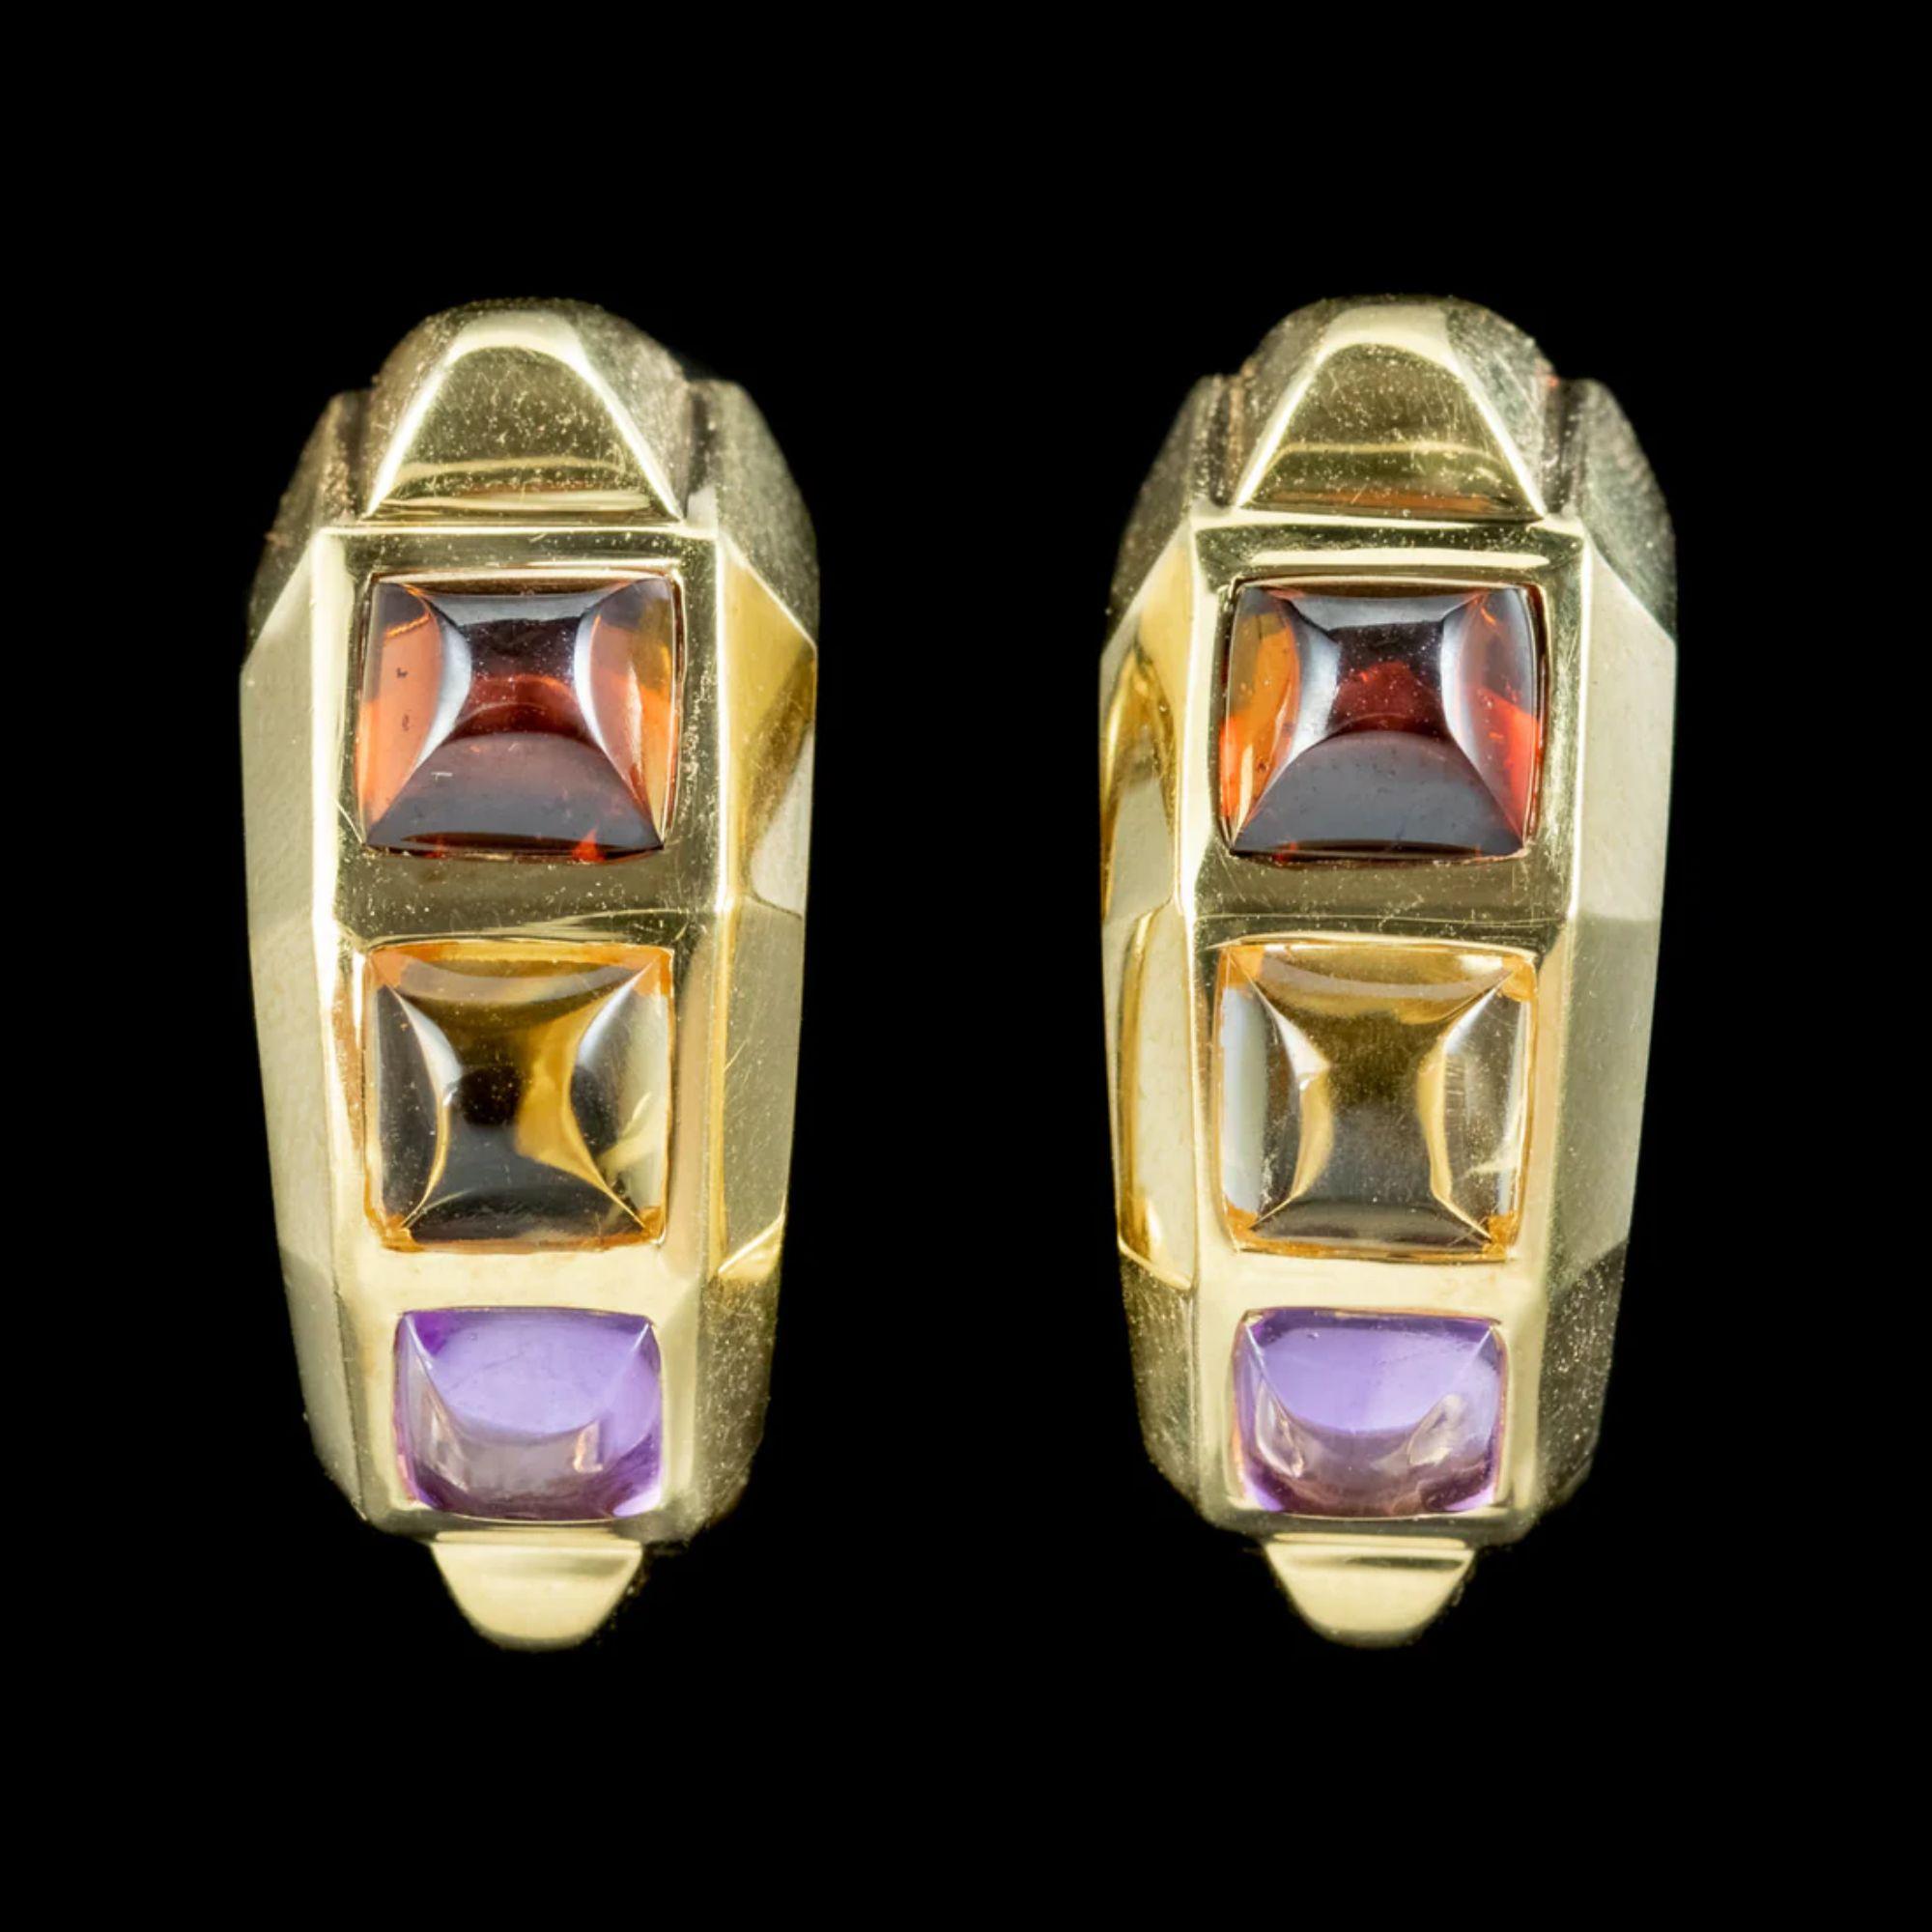 Ein farbenfrohes Paar Vintage-Halbring-Ohrringe, verziert mit quadratischen Cabochon-Granaten, Zitrinen und Amethysten von je ca. 0,70 ct. 

Jeder Ohrring ist aus 18-karätigem Gold gefertigt und hat ein facettiertes, geometrisches Design und einen